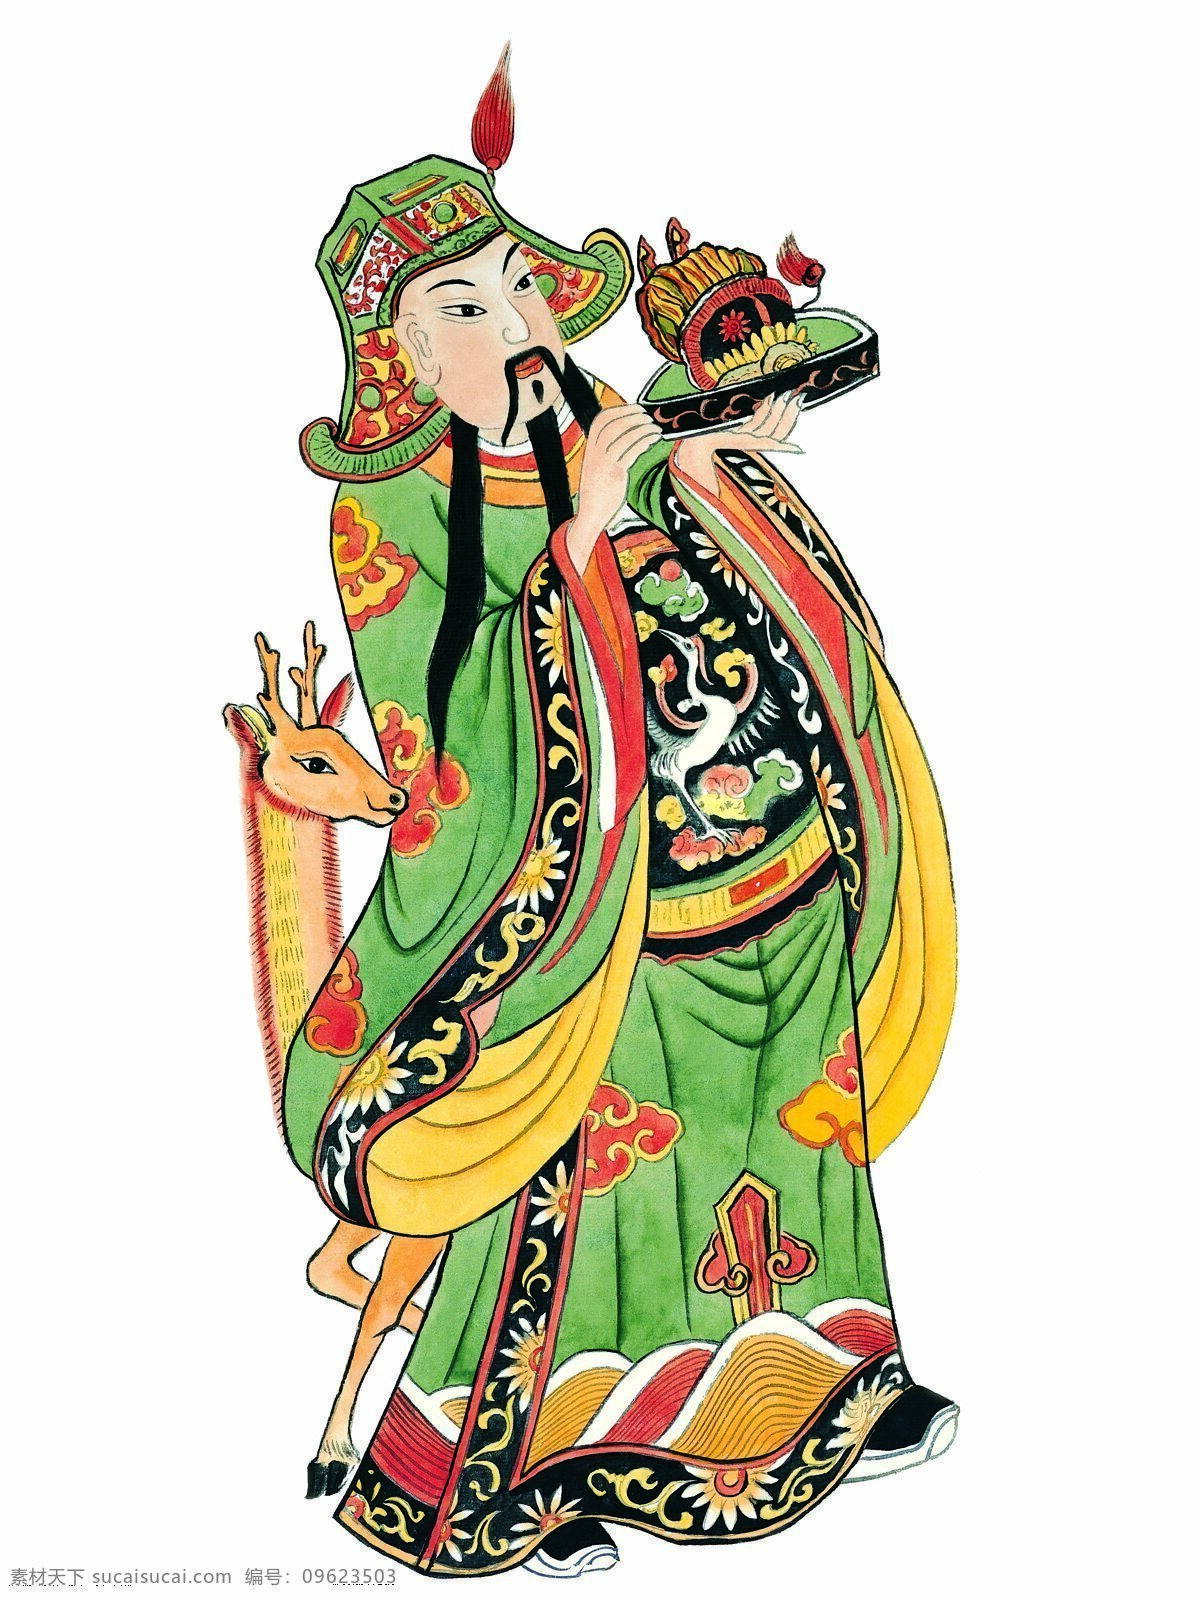 门神 门神图 传统门神 民间艺术 民俗艺术 节日 风俗 过年 绘画 年画 传统 民俗 文化艺术 传统文化